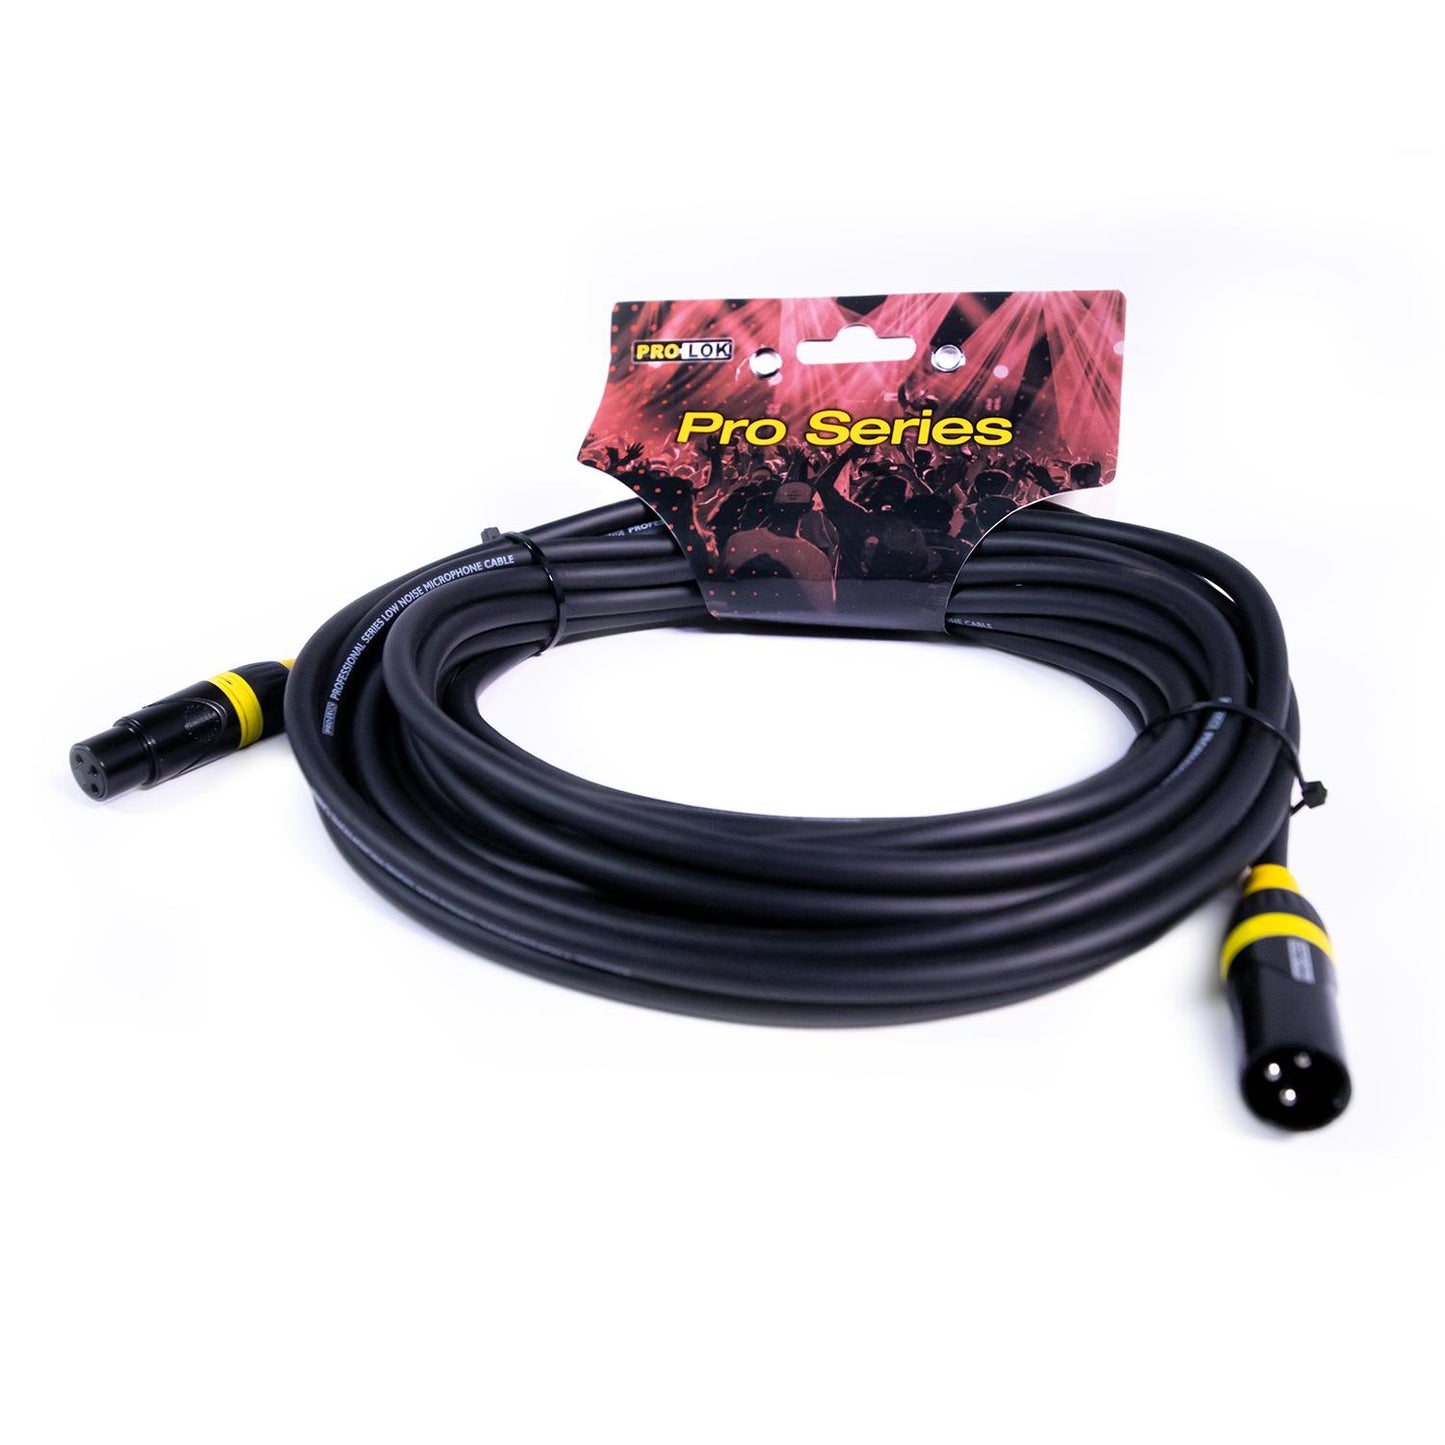 Cable para Micrófono PROS30-MIC TROPICAL